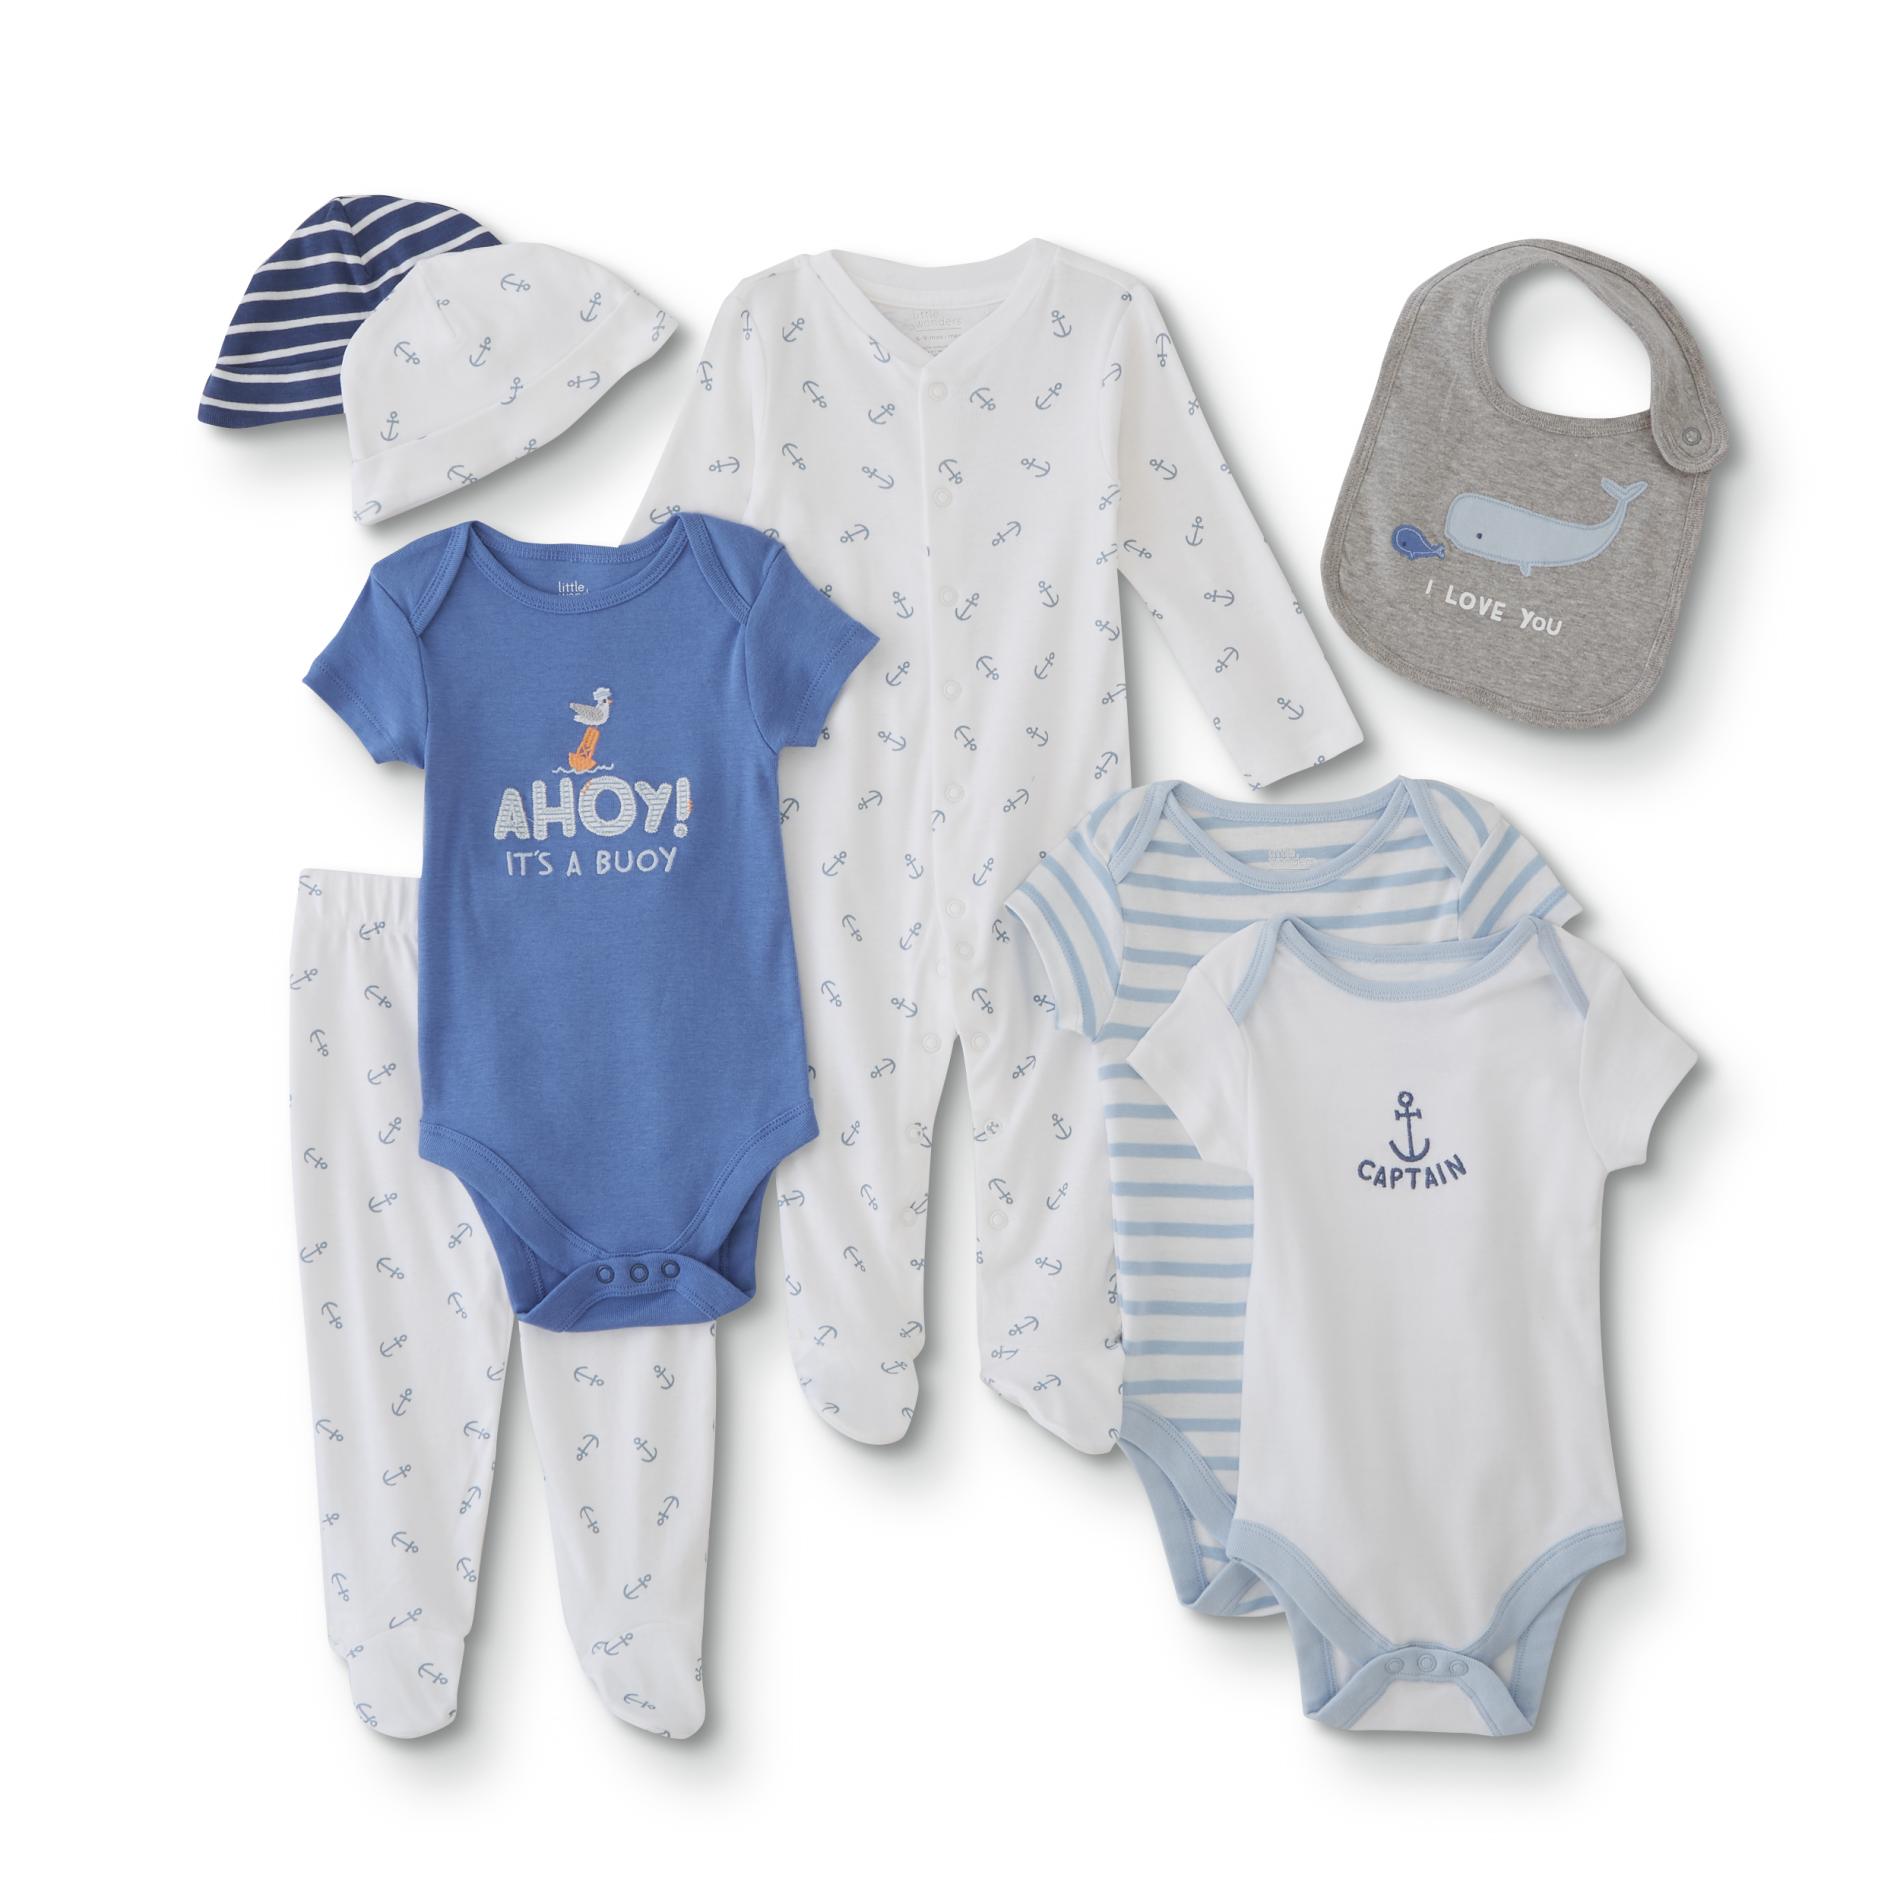 kmart infant clothes